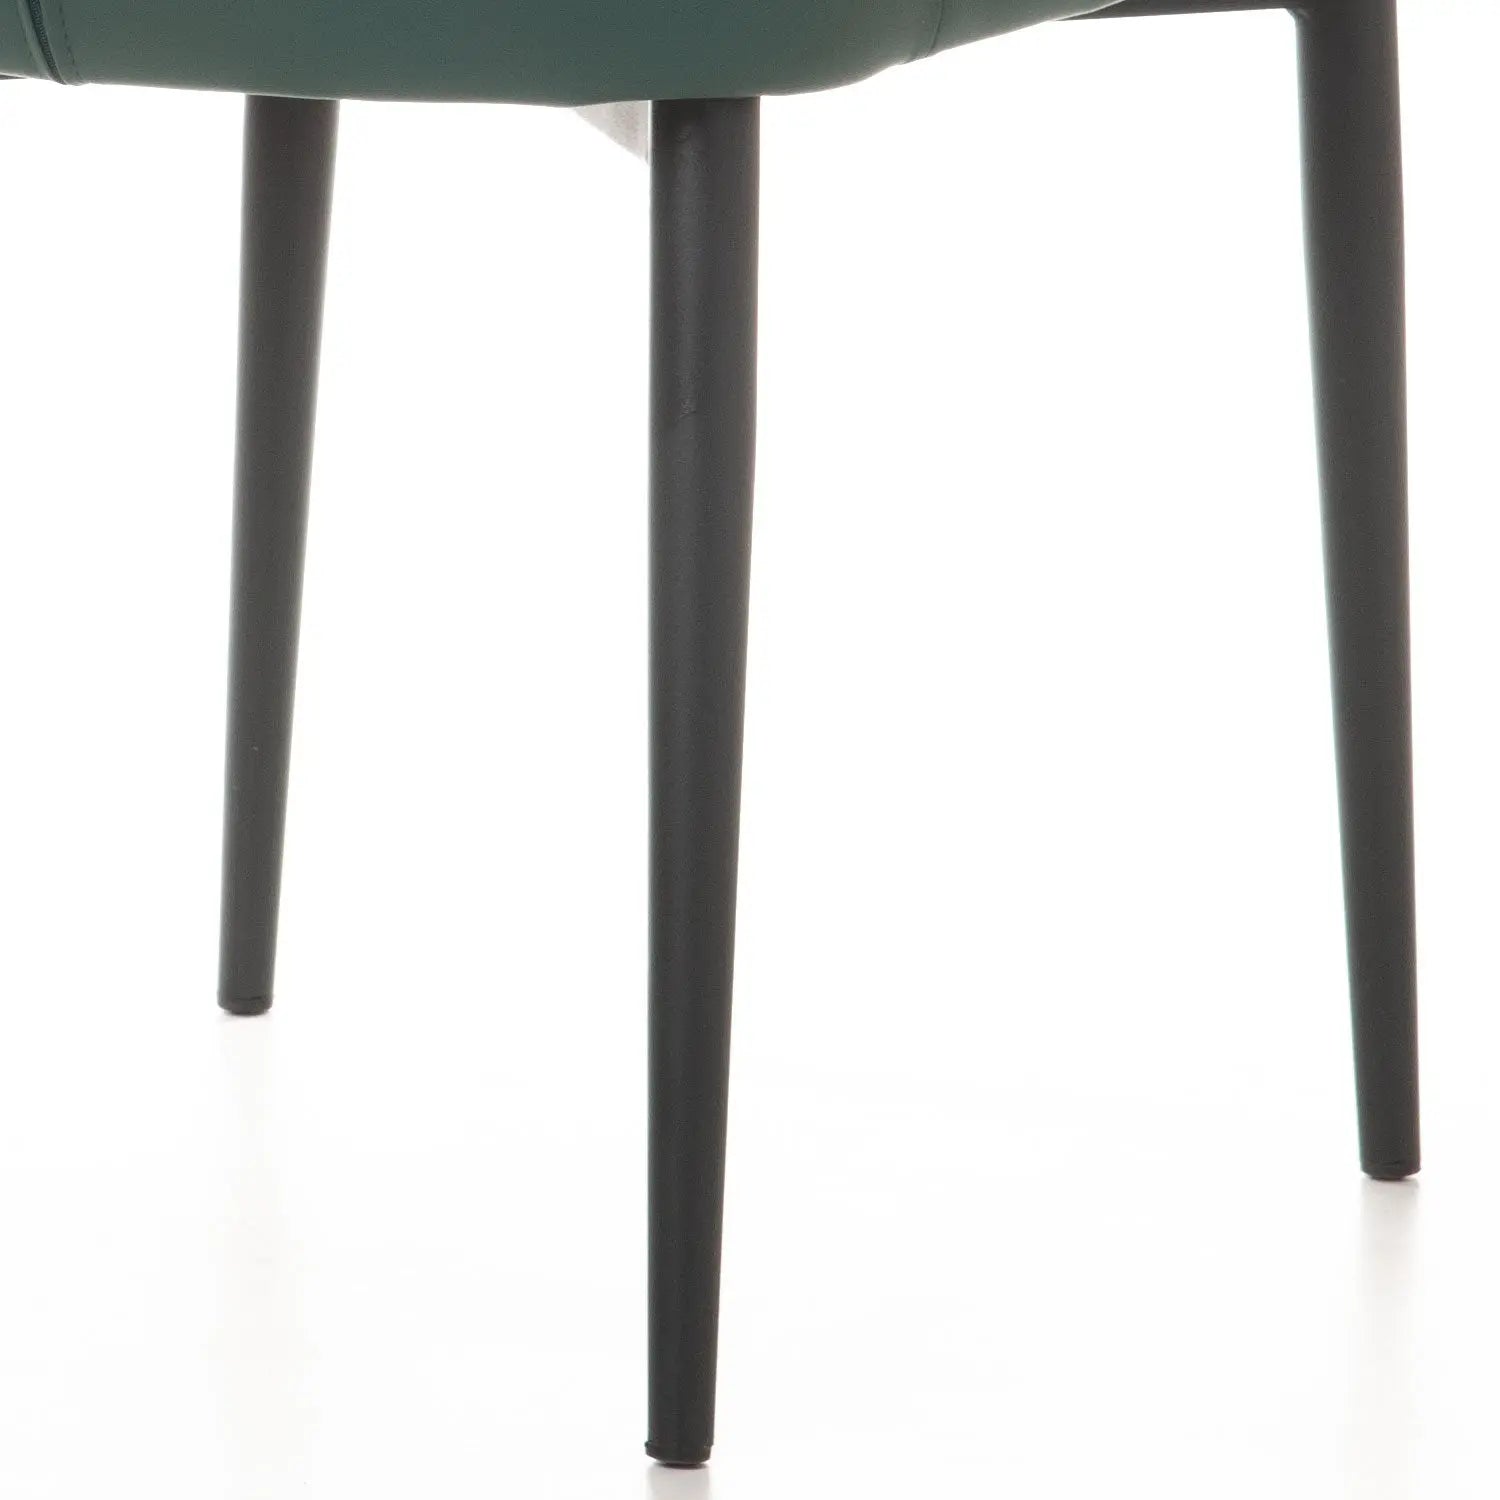 Homedock Kit com 2 Cadeiras Cyntia - PU Verde Juniper c/ Preto Dowell